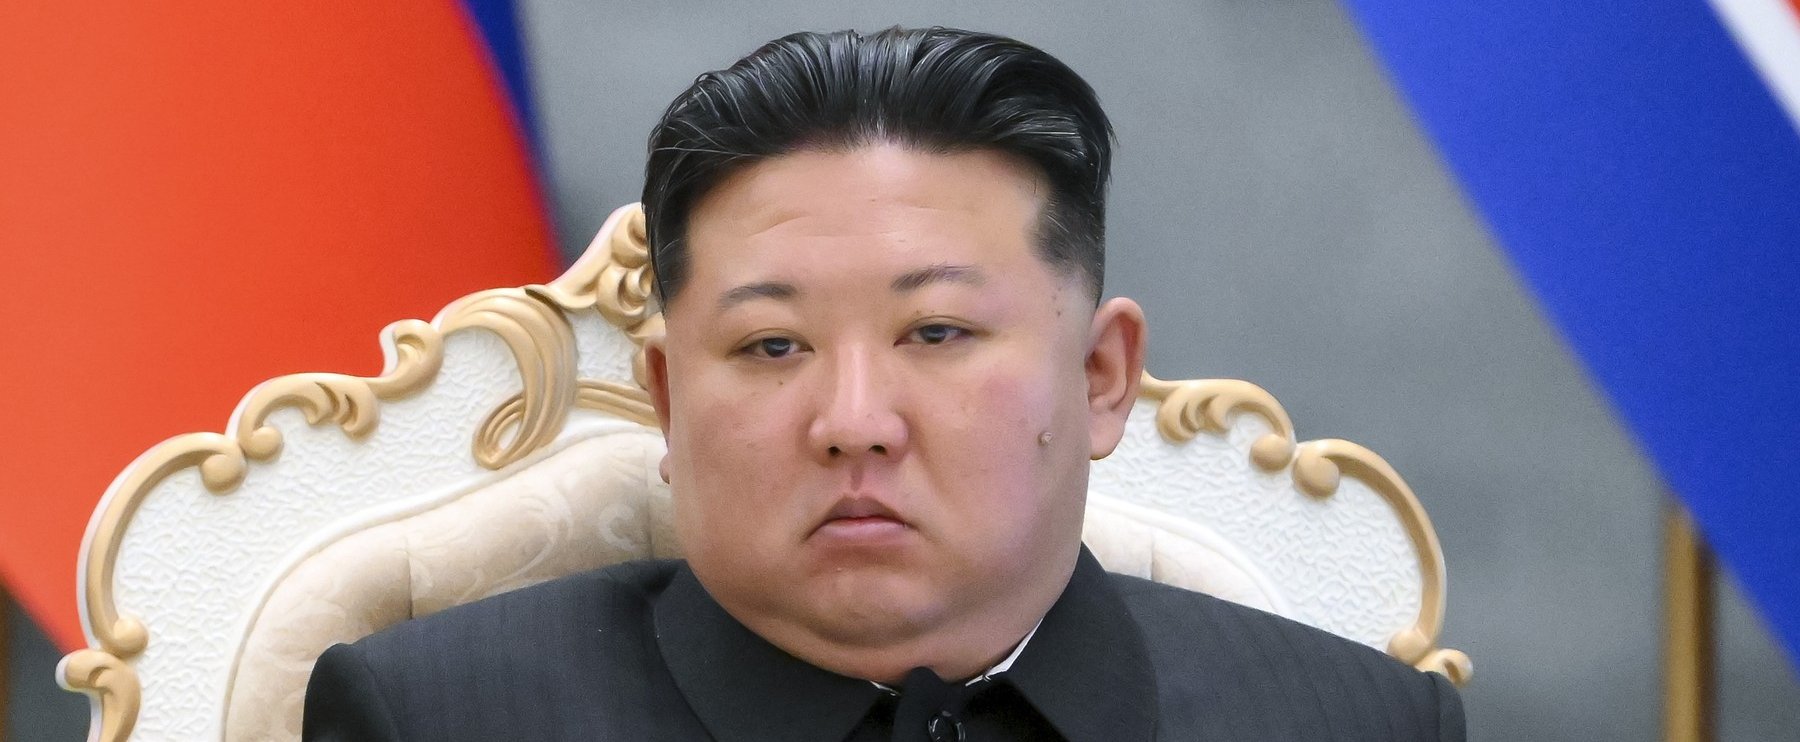 Egész Észak-Koreát megbénította egy 38 éves férfi, meghökkentő következménye lett a tettének